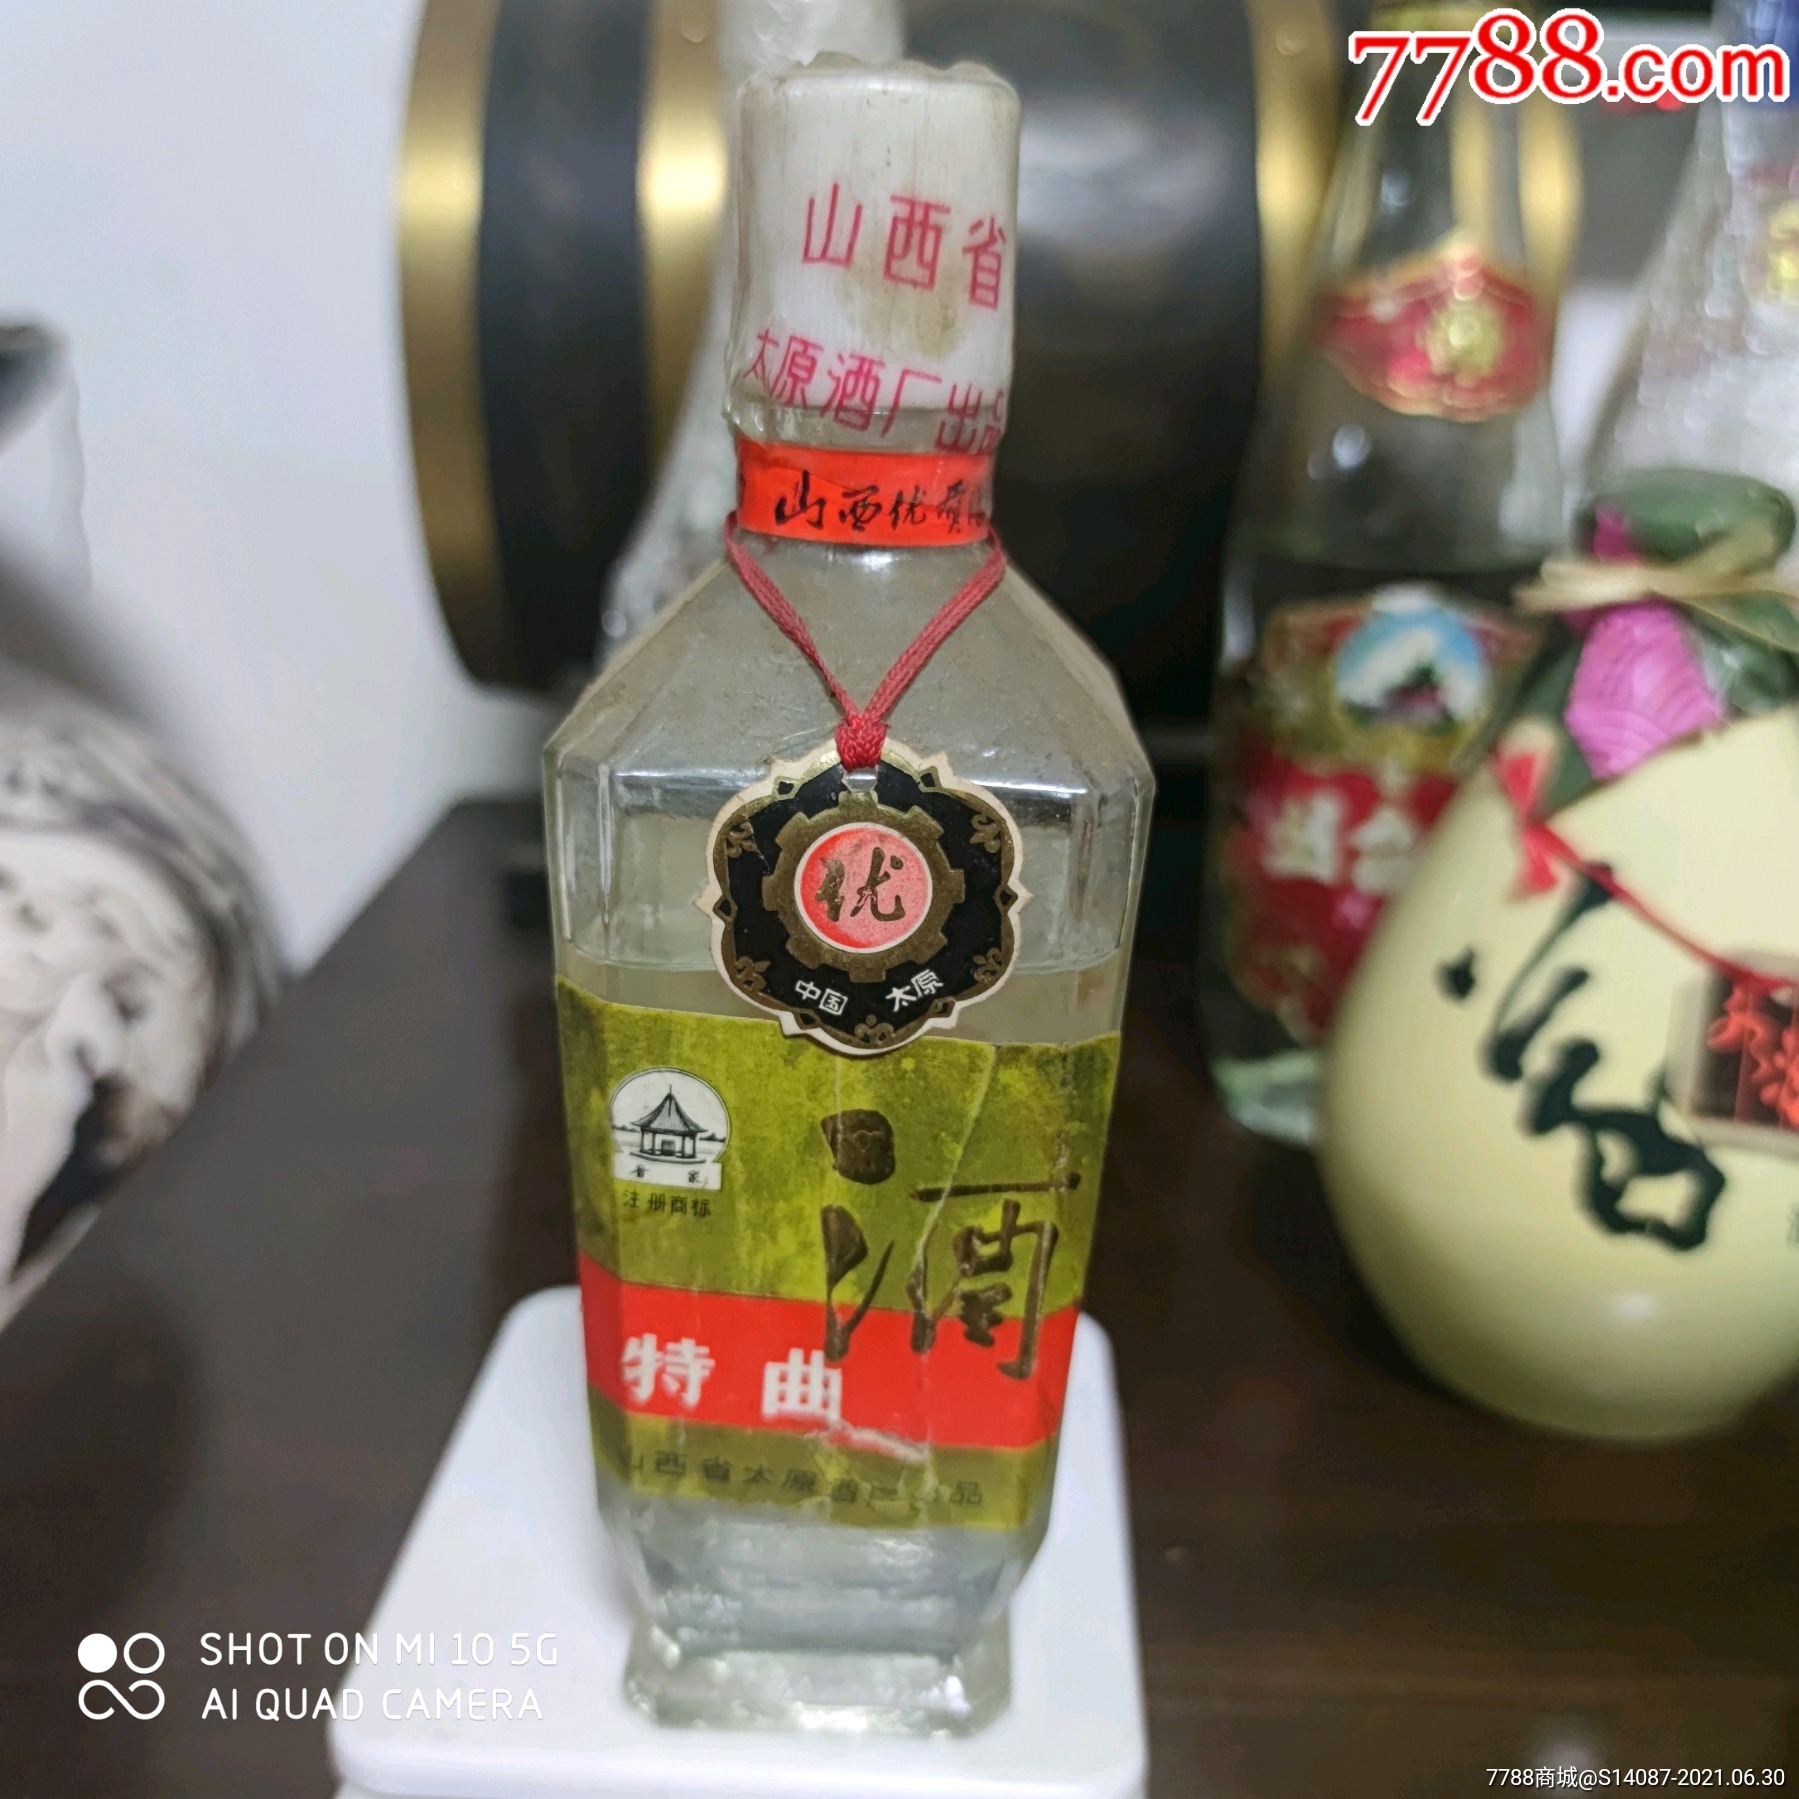 晋泉70周年收藏纪念酒图片